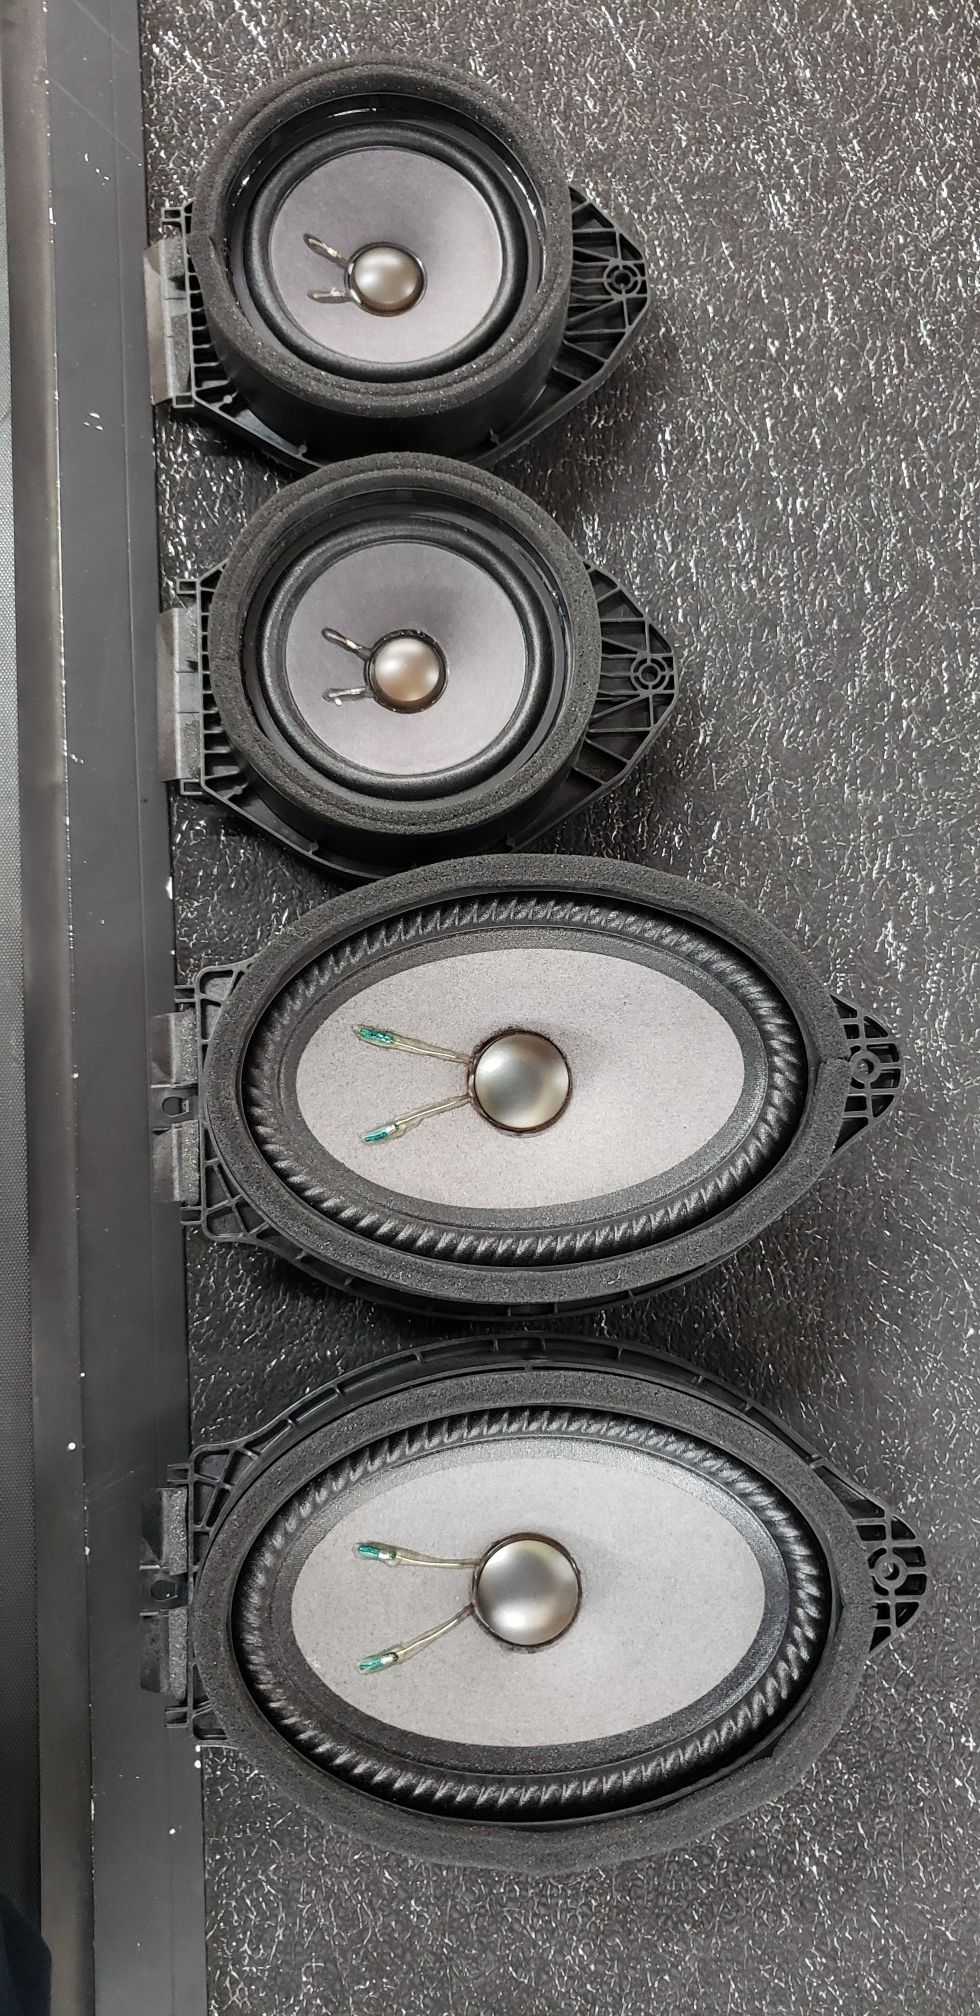 GMC OEM Bose speakers